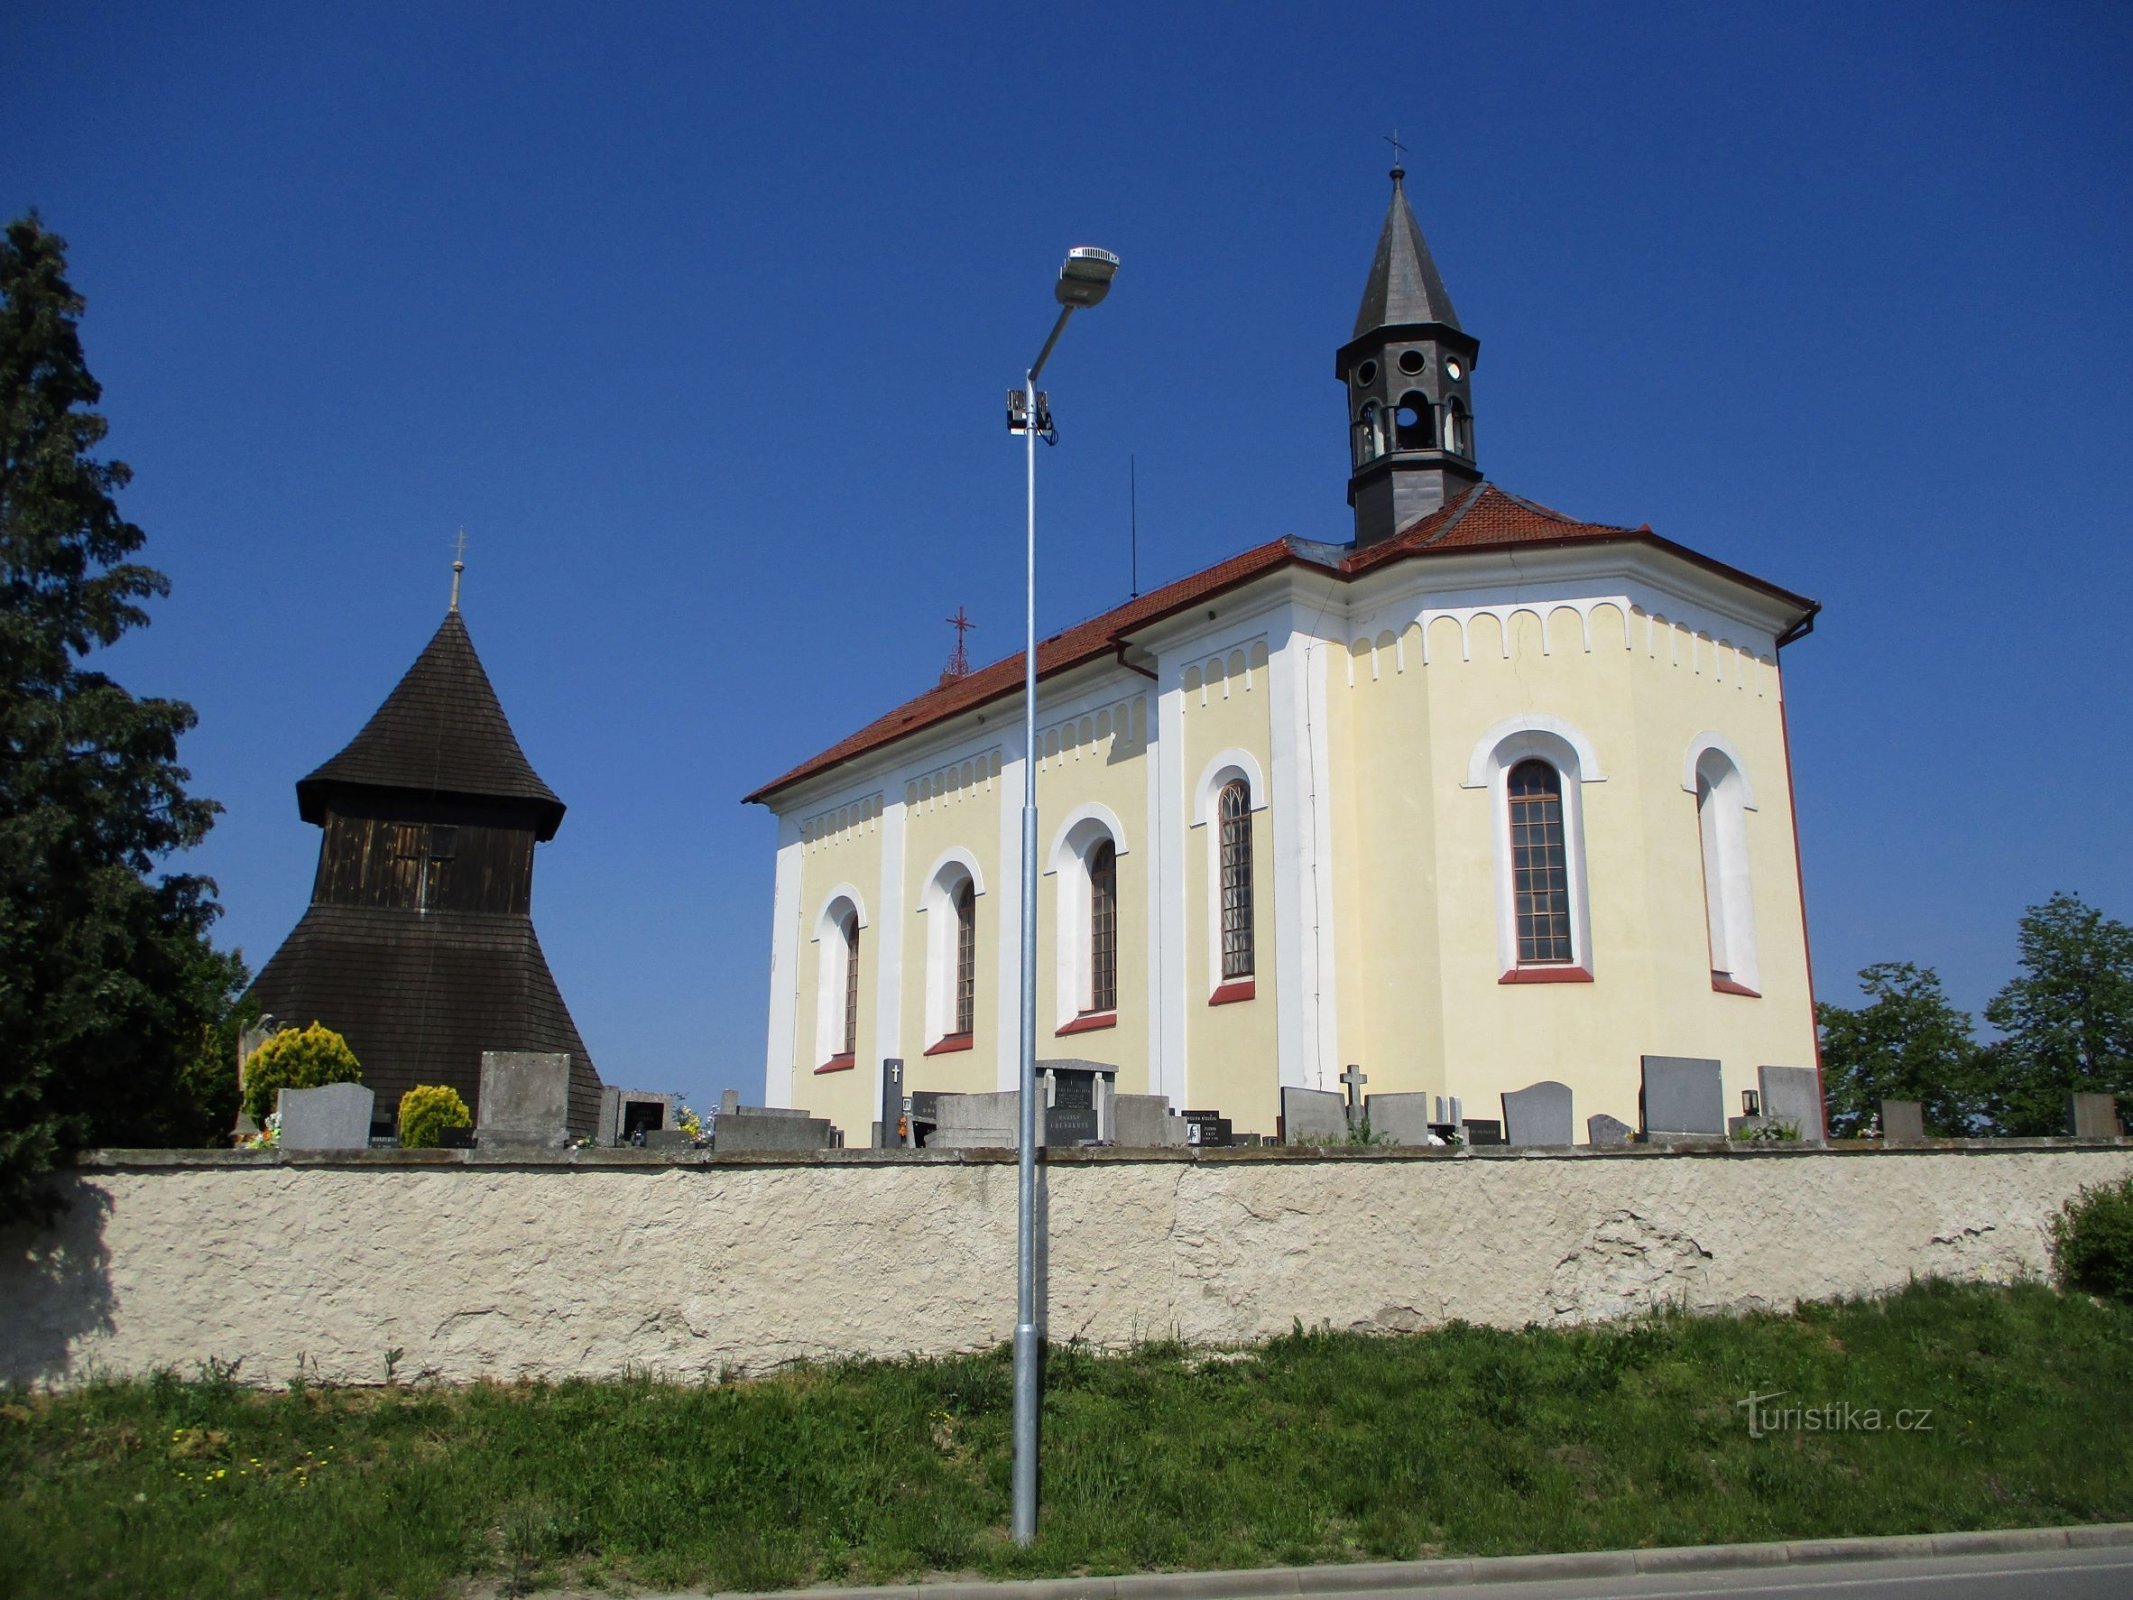 Дзвіниця та церква св. Вацлав (Horní Ředice, 16.5.2020)